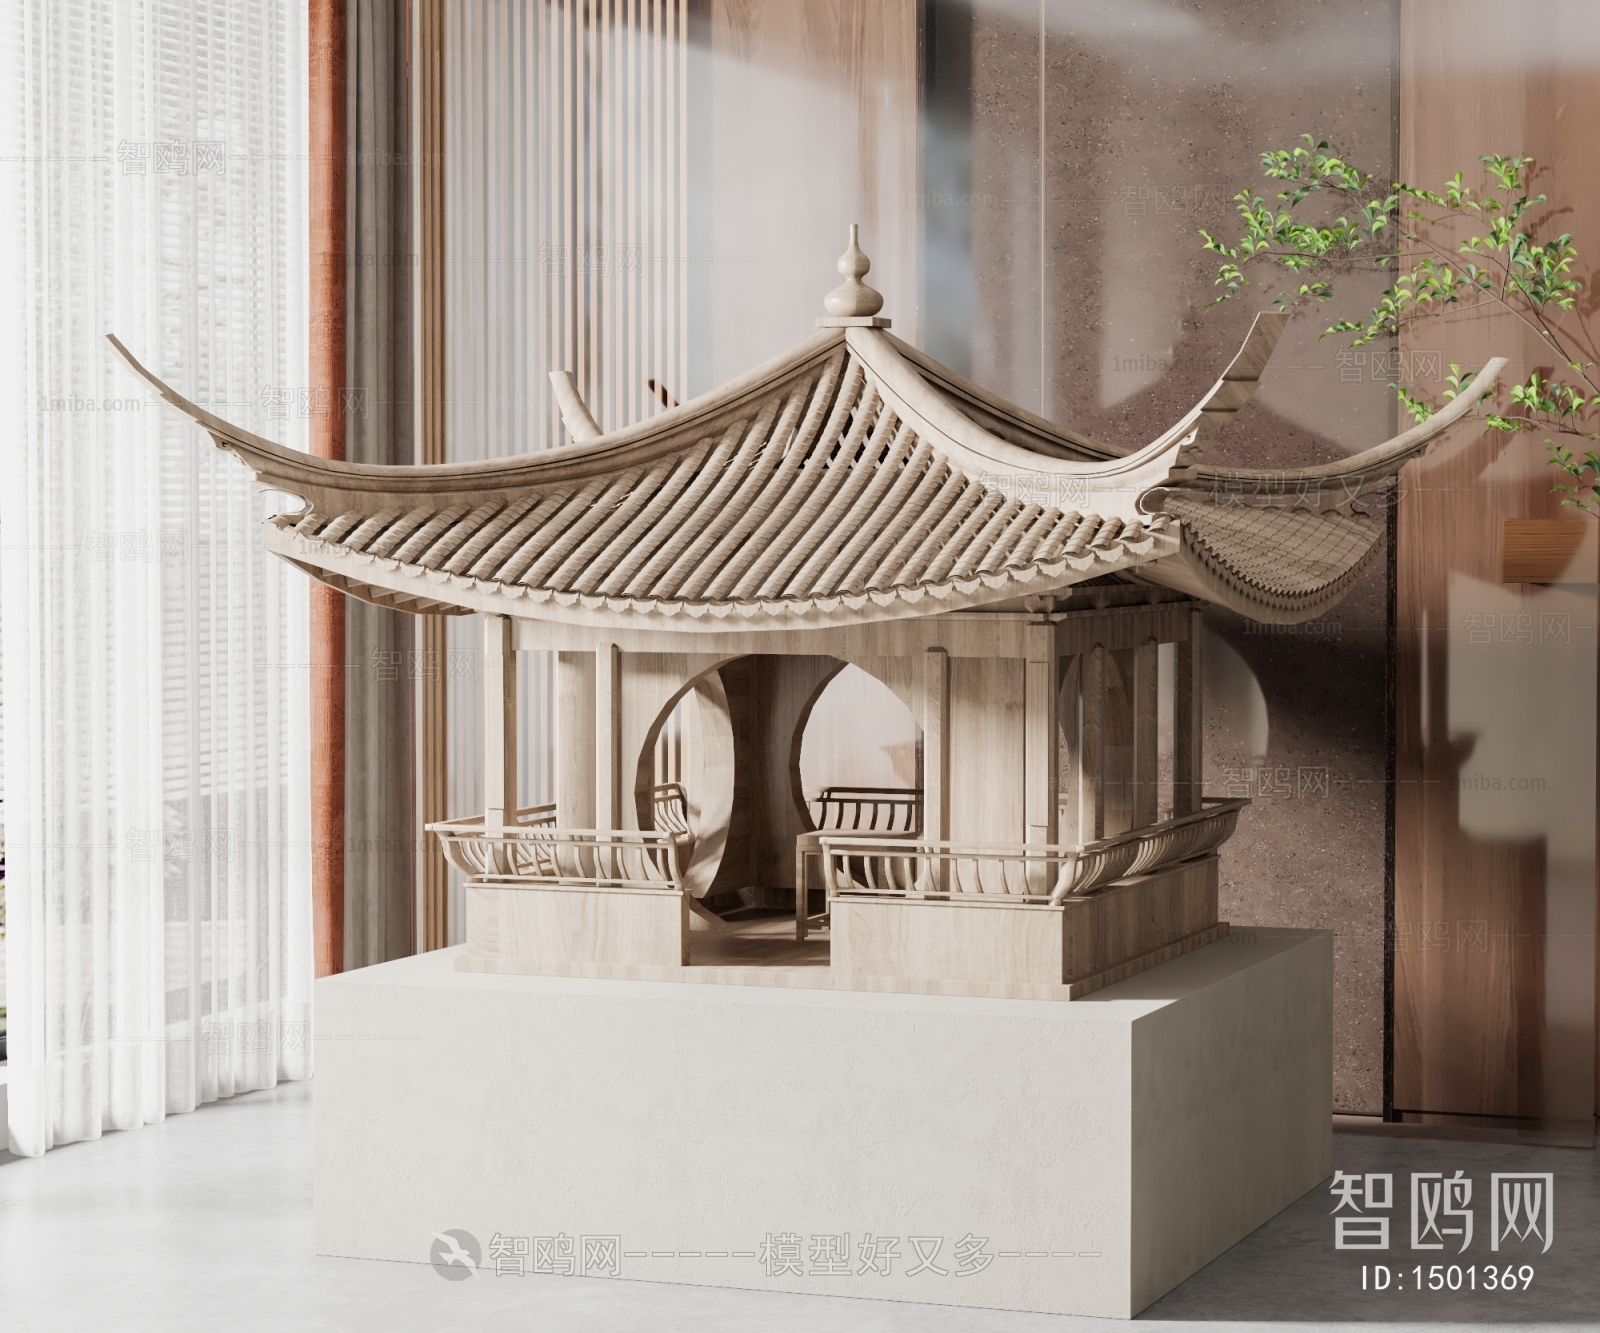 新中式古建筑雕塑摆件